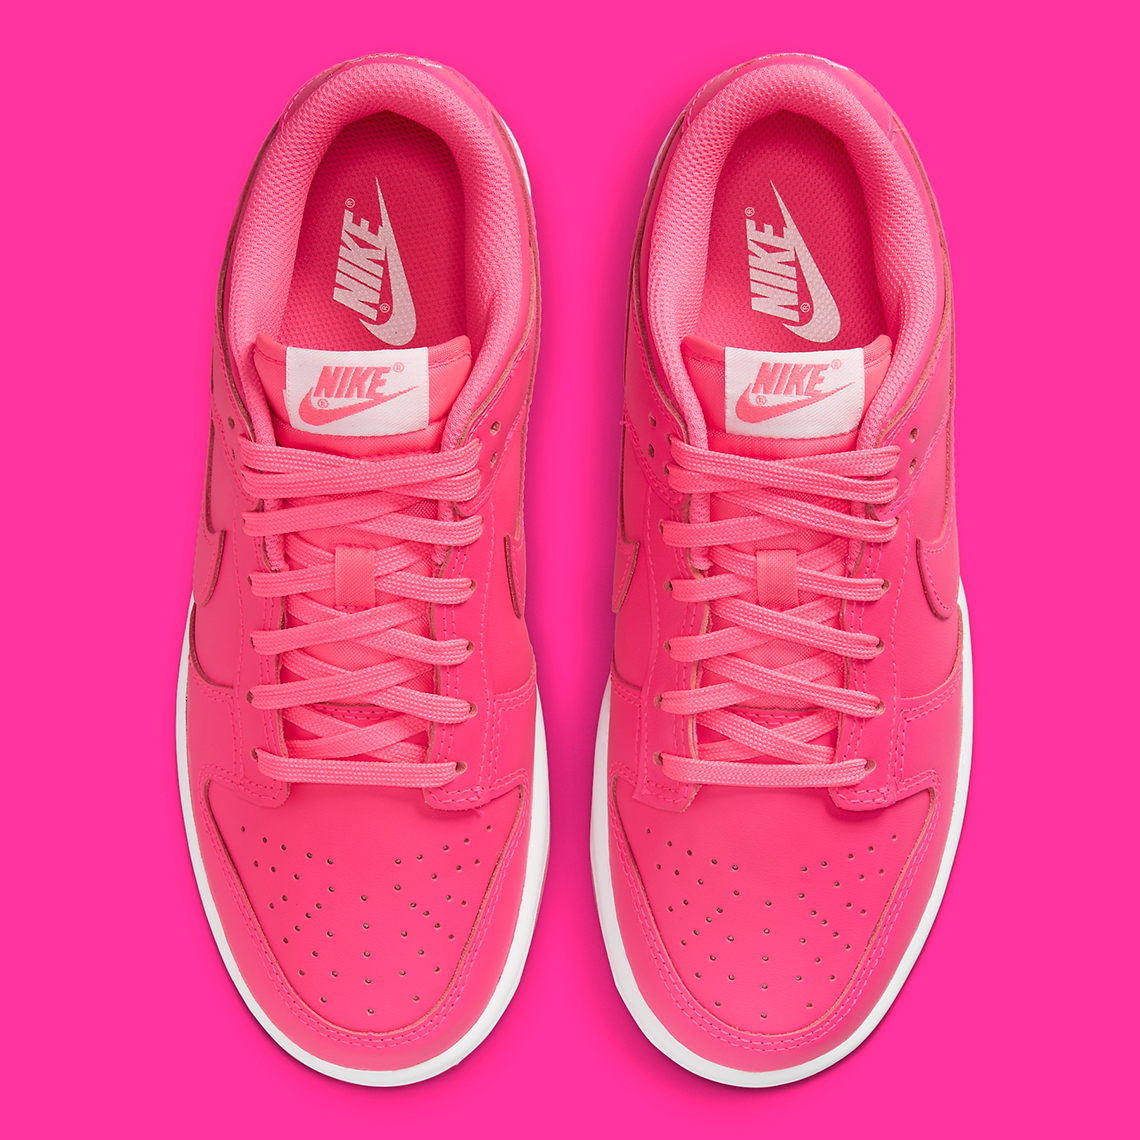 Nike Dunk Free Low Hot Pink Dz5196 600 1